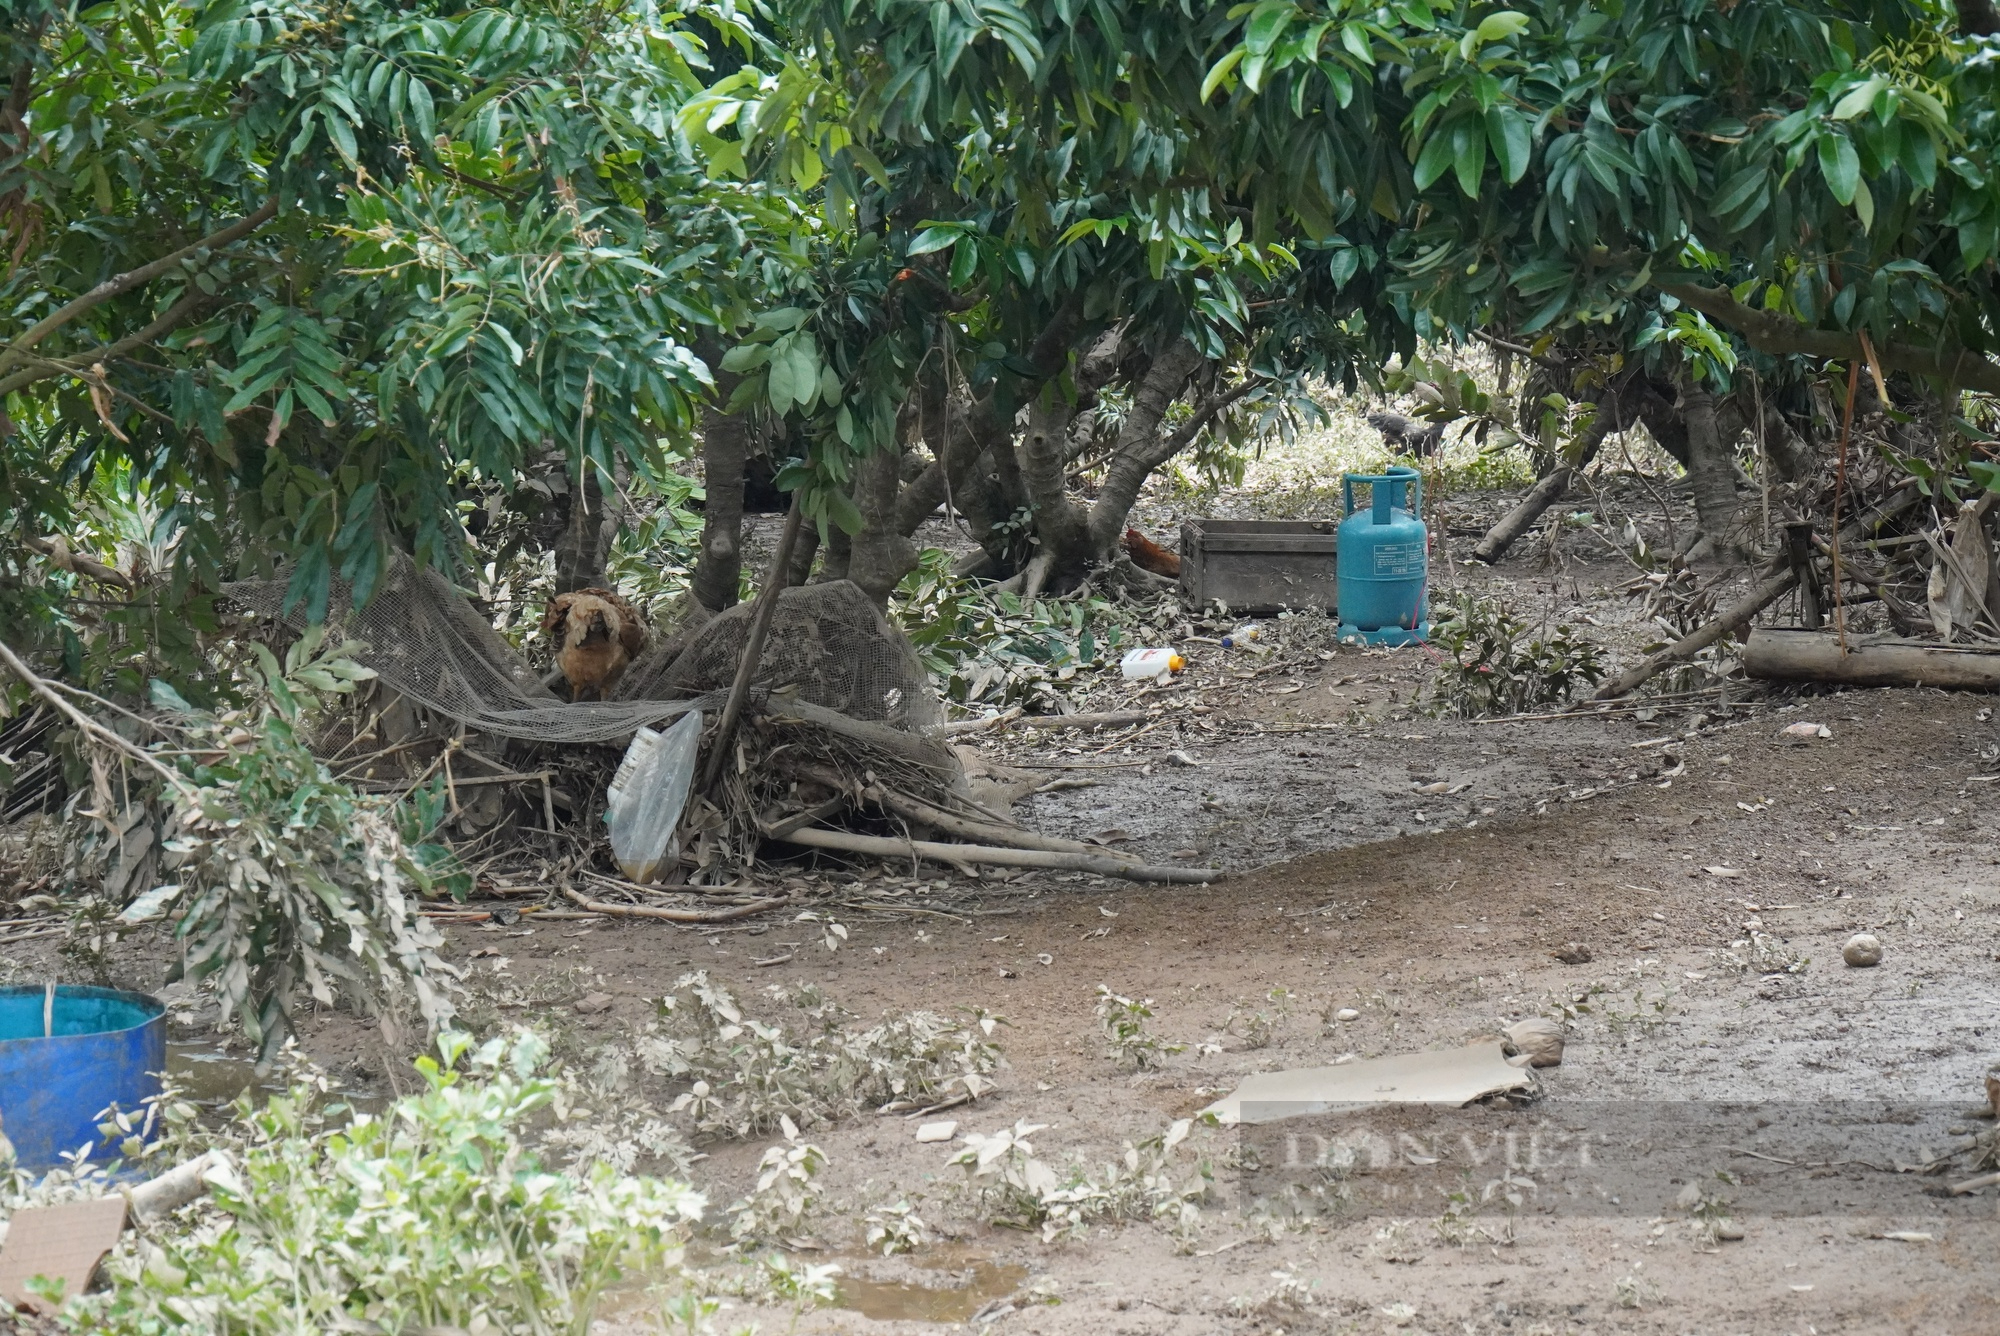 Kinh hoàng lũ quét ở Bắc Giang cuốn bật gốc cây, vườn cây nhãn, vải thiều... bị phủ kín bùn đen - Ảnh 2.